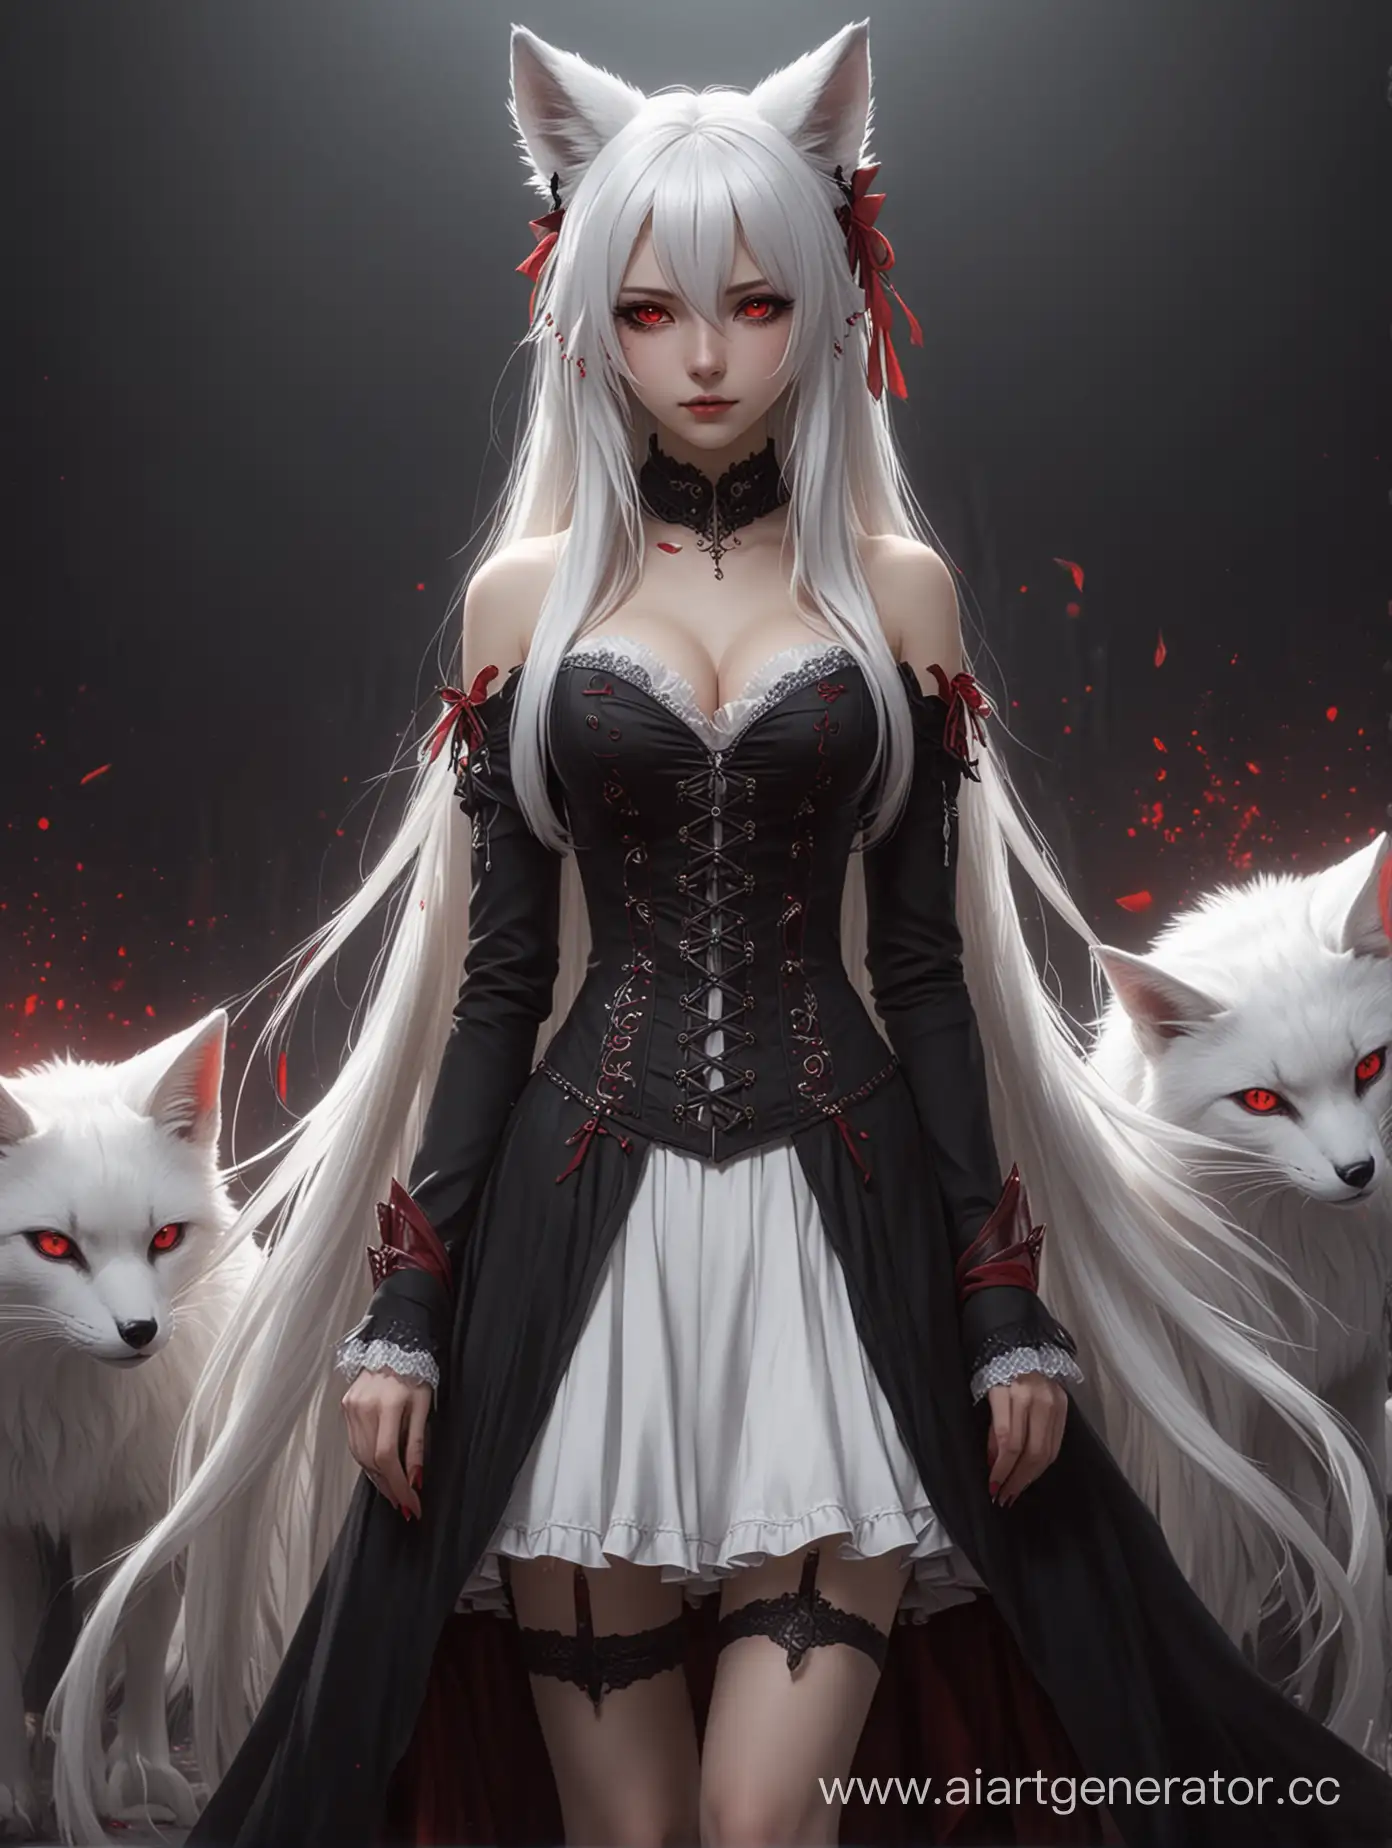 аниме, девушка, белые длинные волосы, белые лисьи уши, белый лисий хвост, красные кошачьи глаза, чёрная готическая одежда аристократа, использует магию крови, 4к, в полный рост